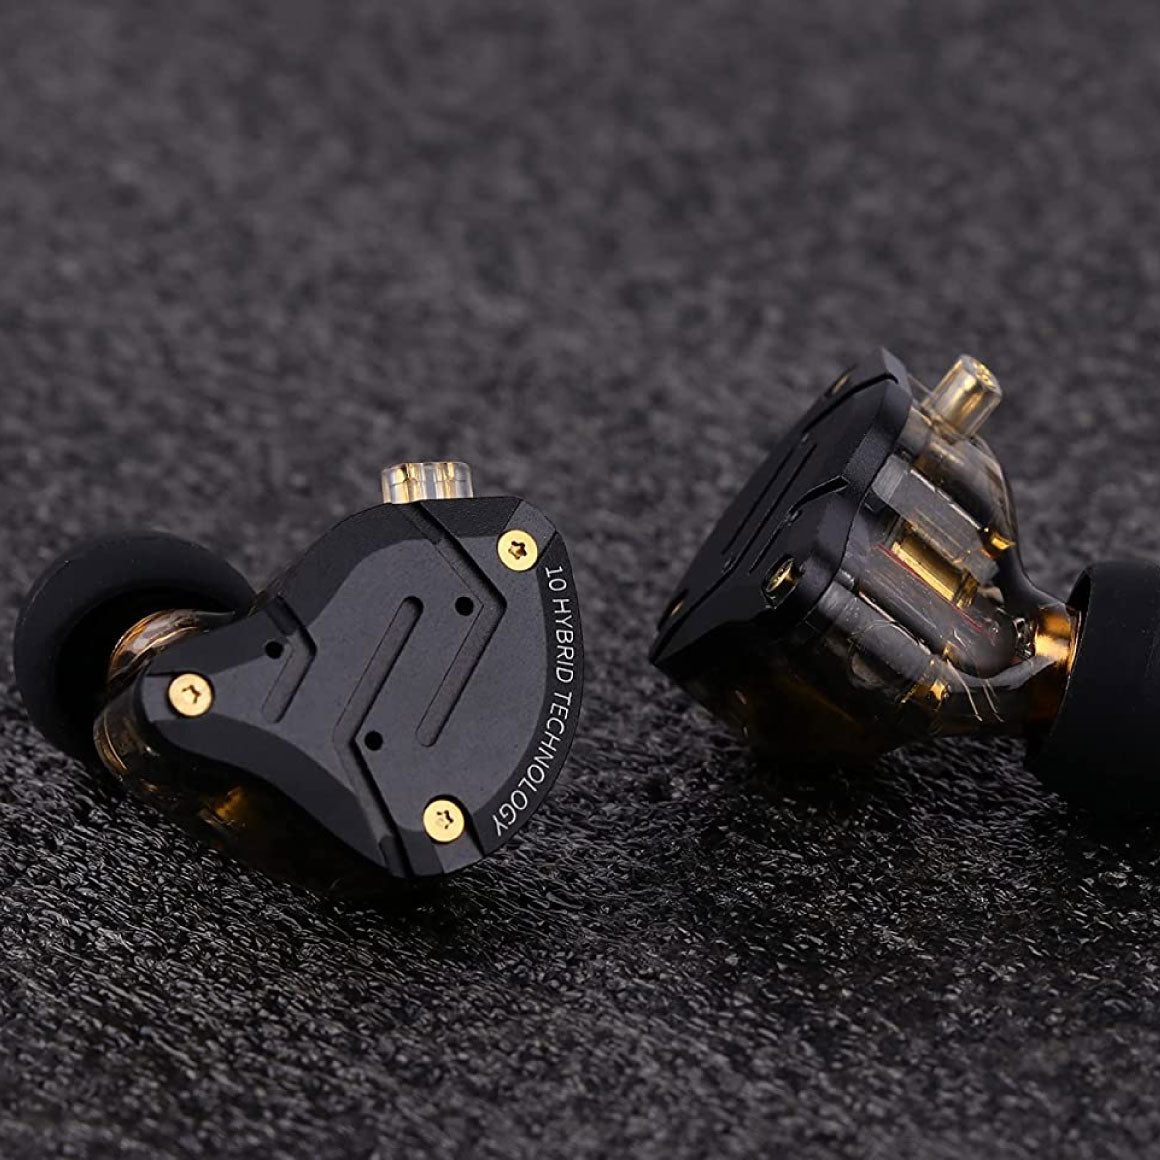 KZ ZS10 Pro 4BA+1DD In-Ear (Unboxed) HiFi Metal Earphones Online